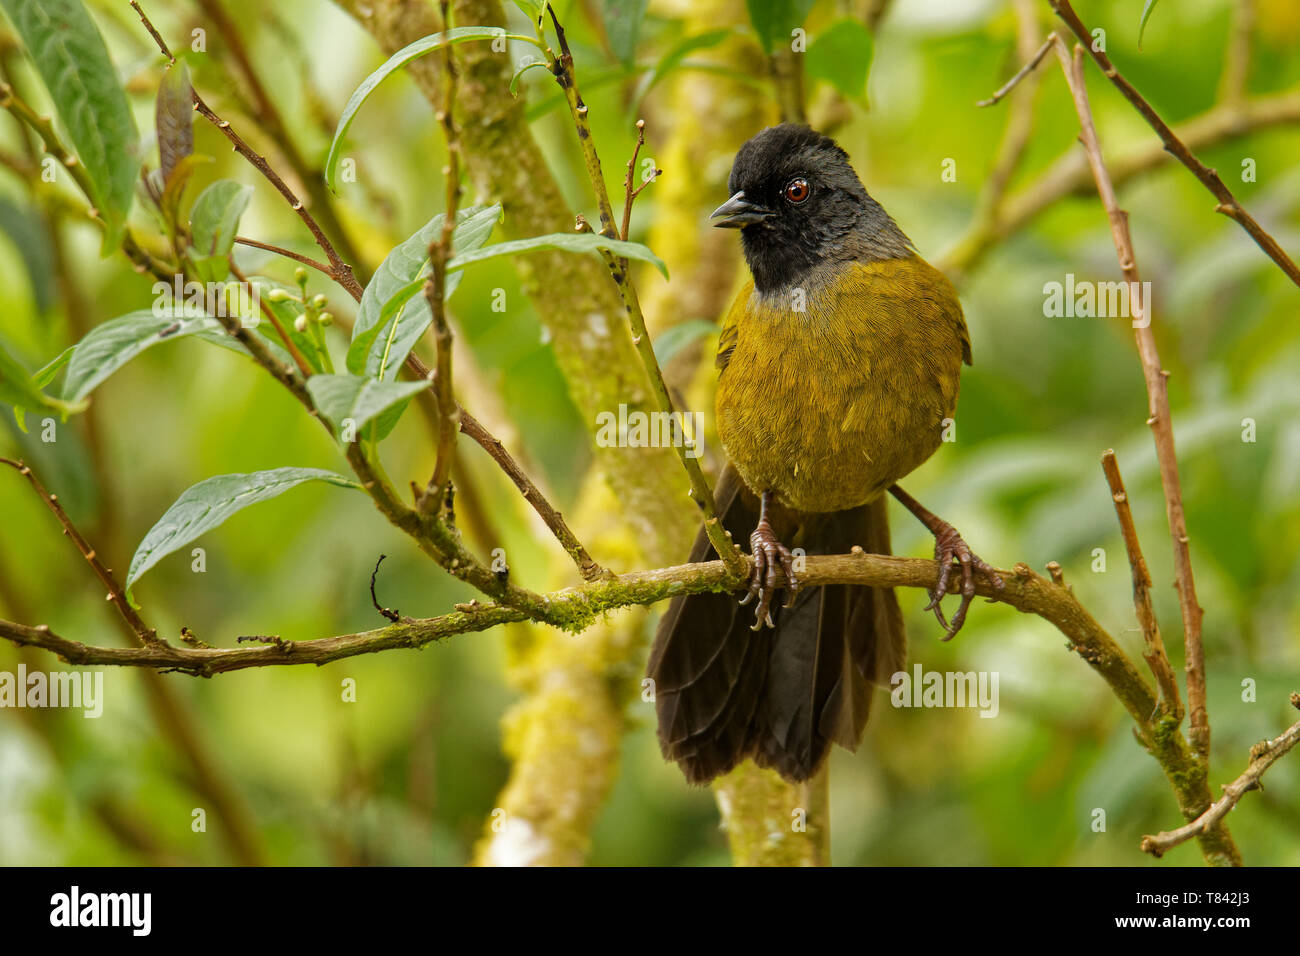 Grande-footed Finch - Pezopetes capitalis passerine uccello endemico altopiani del Costa Rica e Panama occidentale. Foto Stock